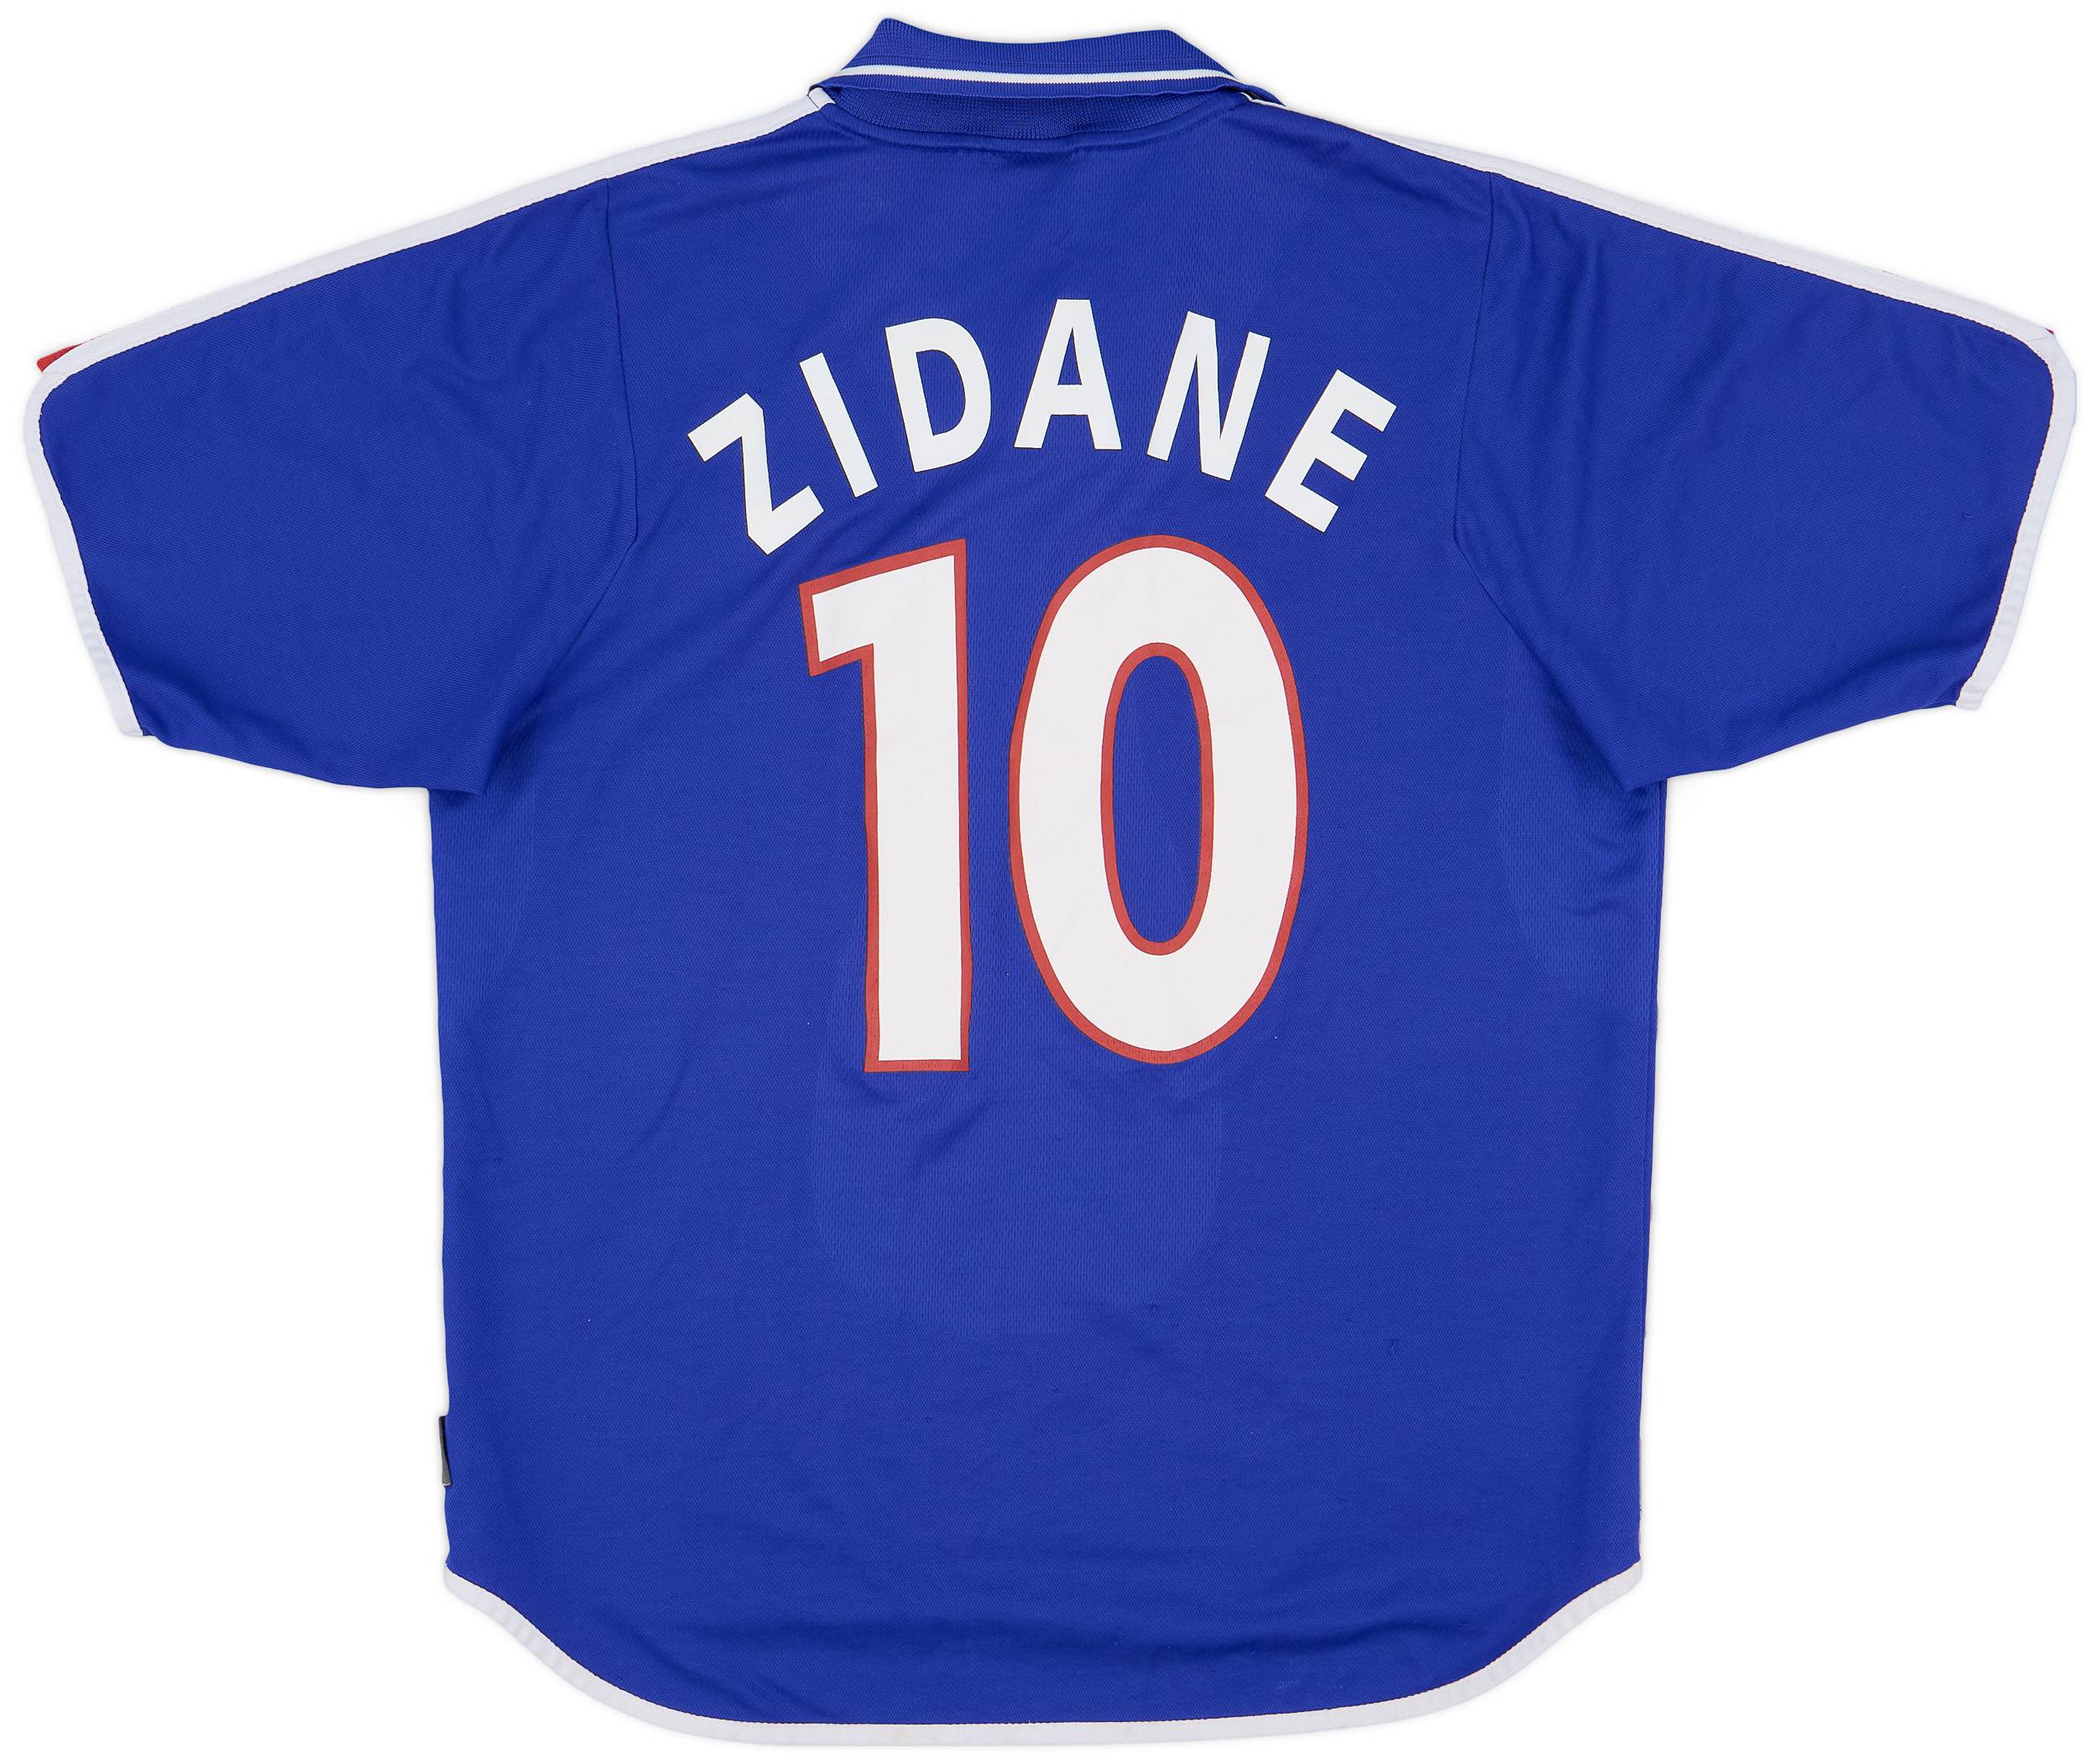 2000-02 France Home Shirt Zidane #10 - 8/10 - (L)